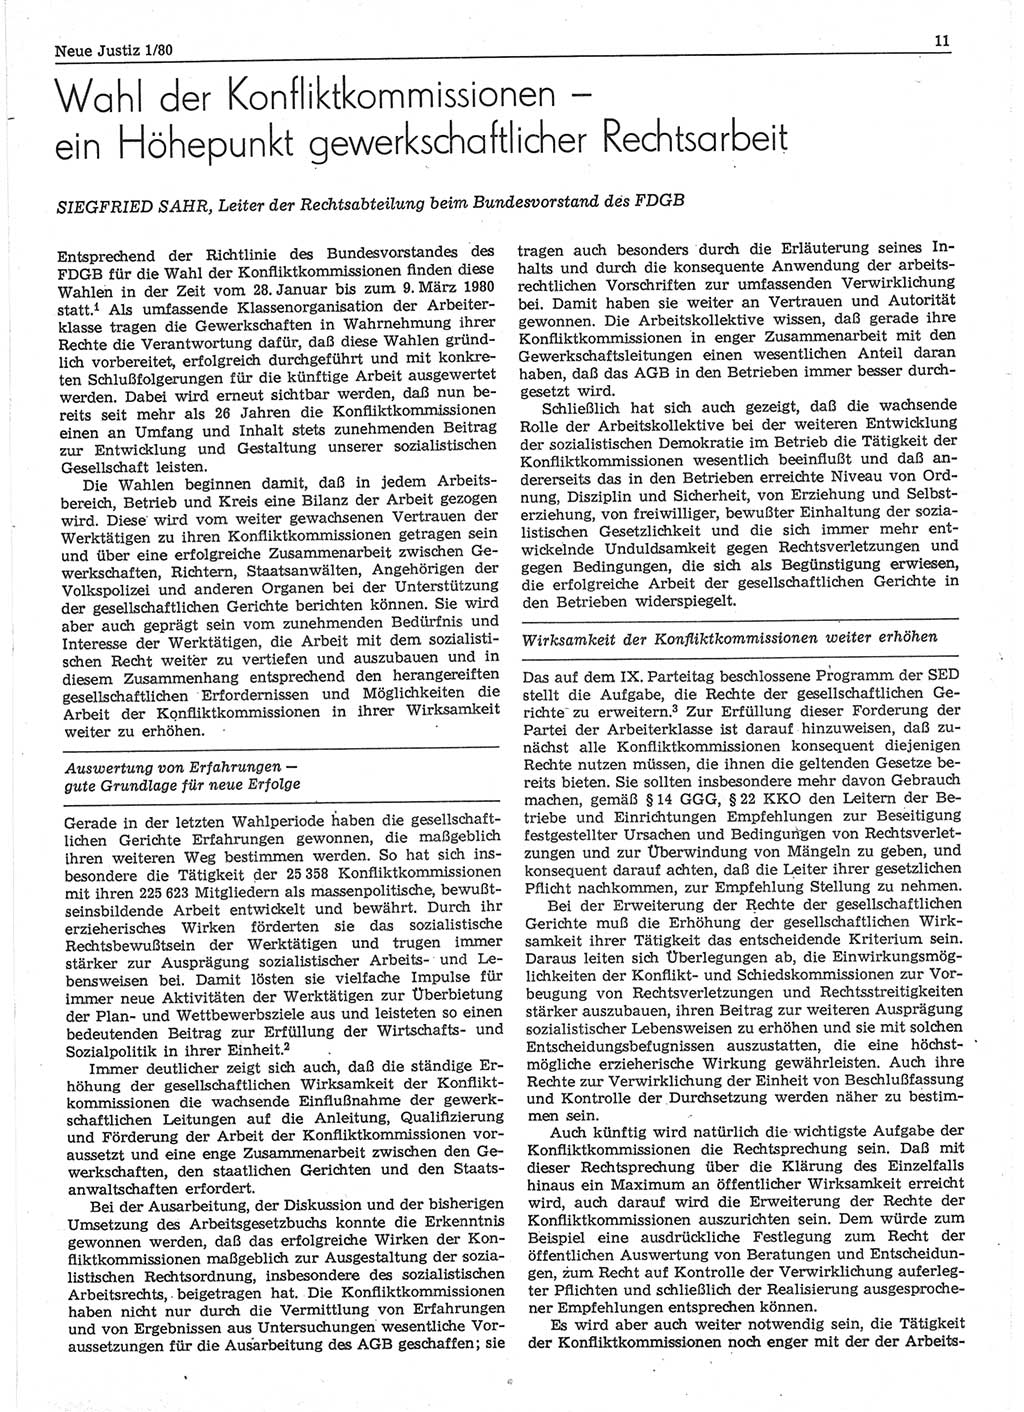 Neue Justiz (NJ), Zeitschrift für sozialistisches Recht und Gesetzlichkeit [Deutsche Demokratische Republik (DDR)], 34. Jahrgang 1980, Seite 11 (NJ DDR 1980, S. 11)